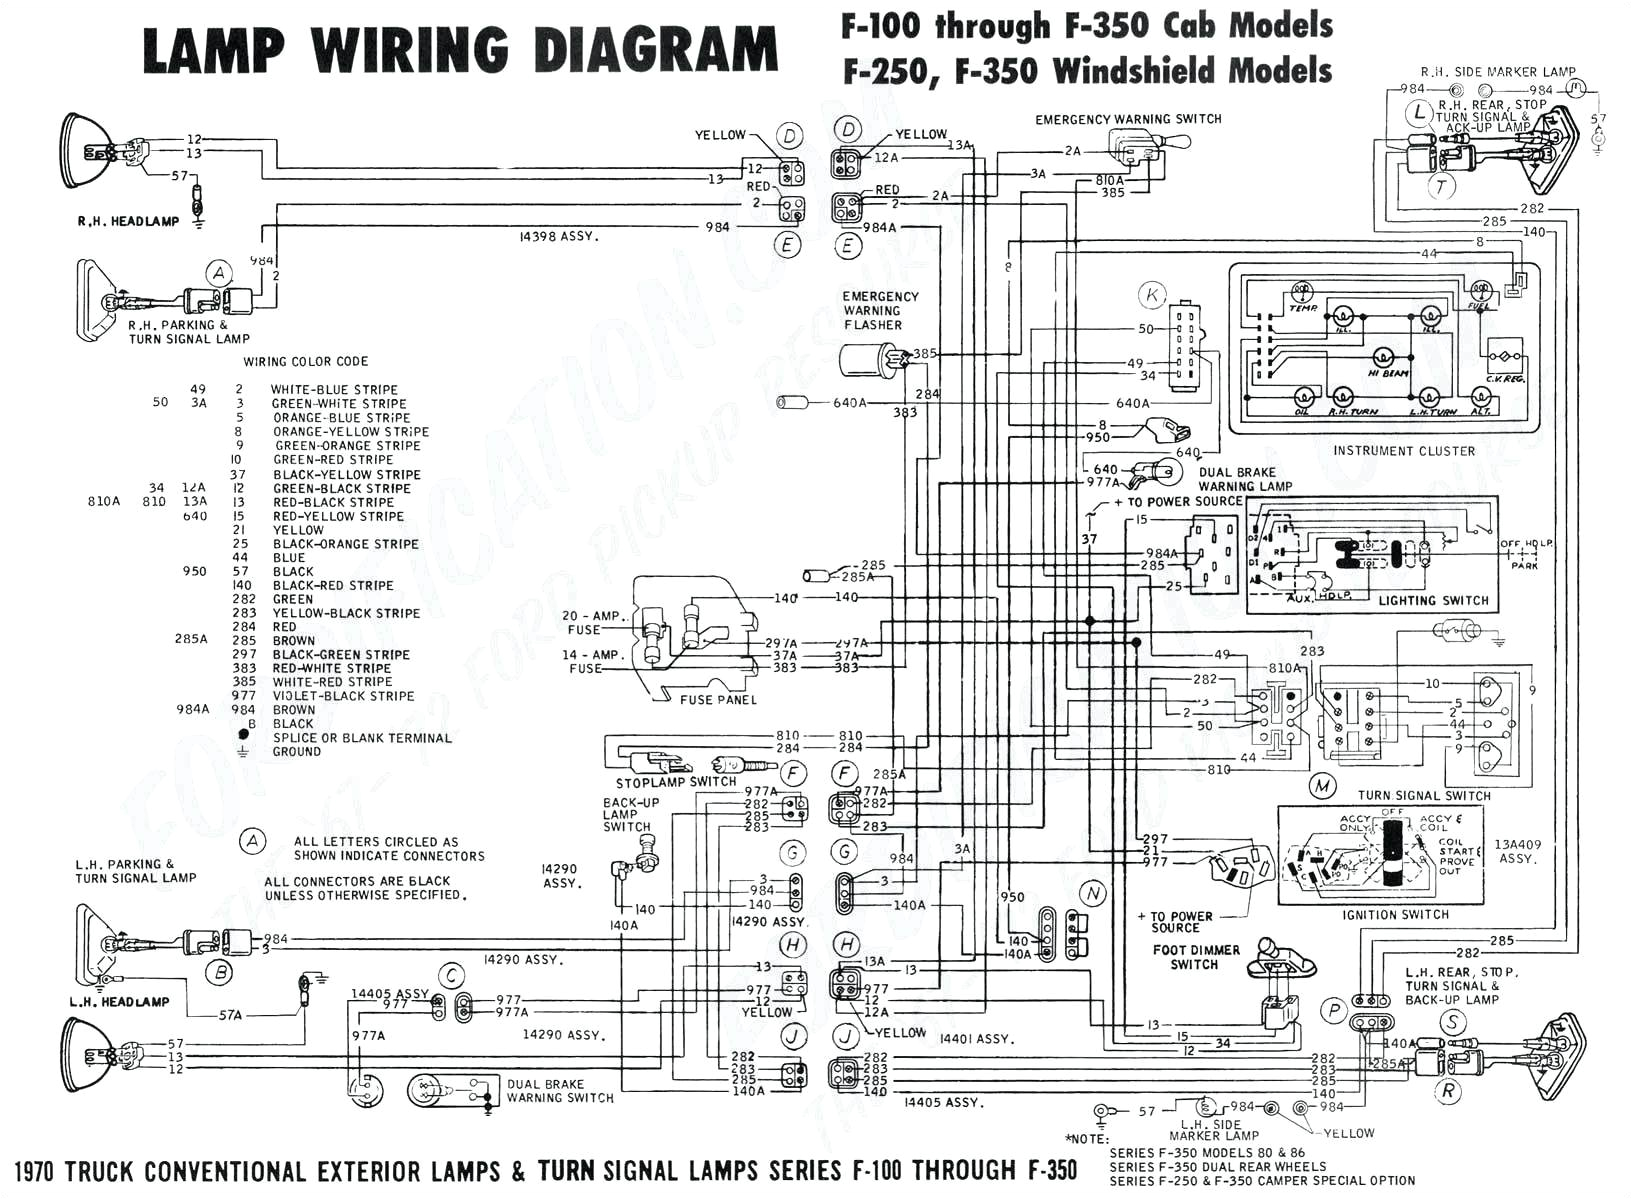 fan relay wiring diagram f250 wiring diagram factory 2006 ford f350 wiring diagrams wiring diagram post2006